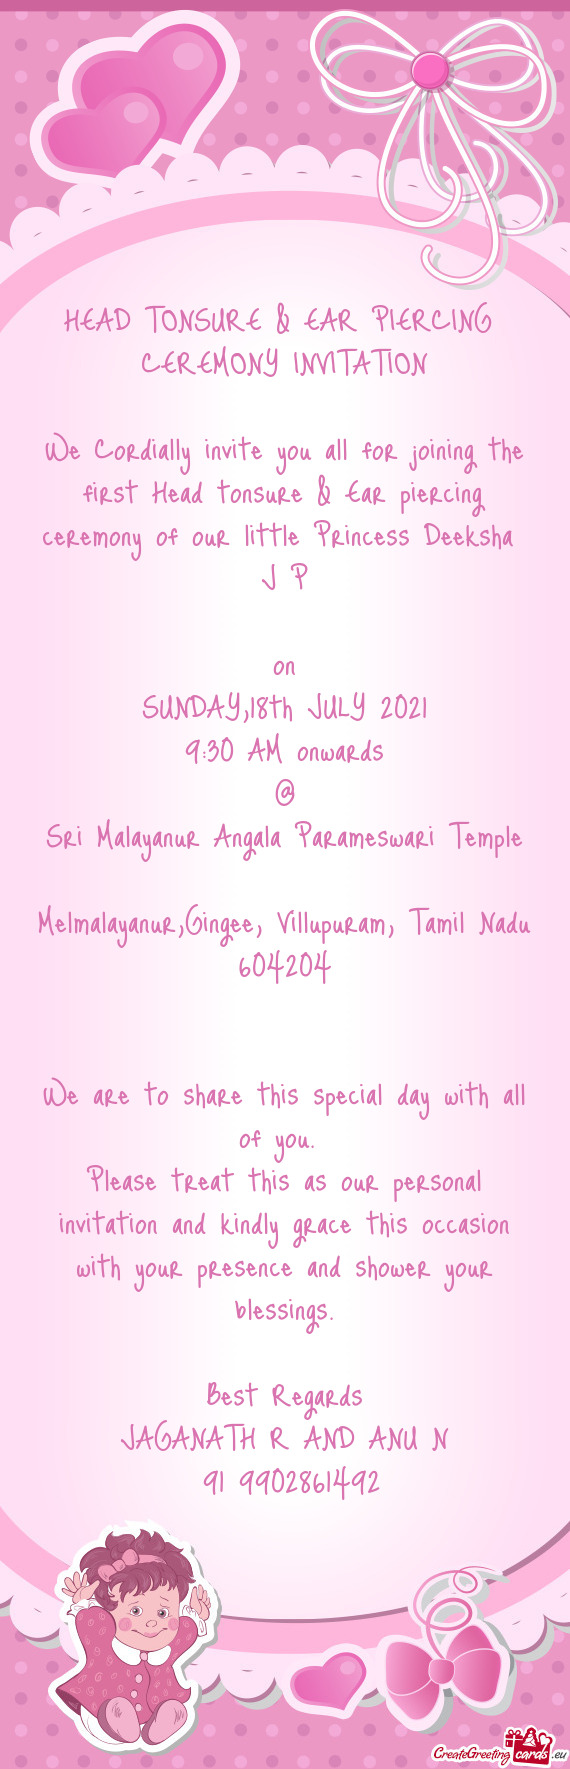 Melmalayanur,Gingee, Villupuram, Tamil Nadu 604204